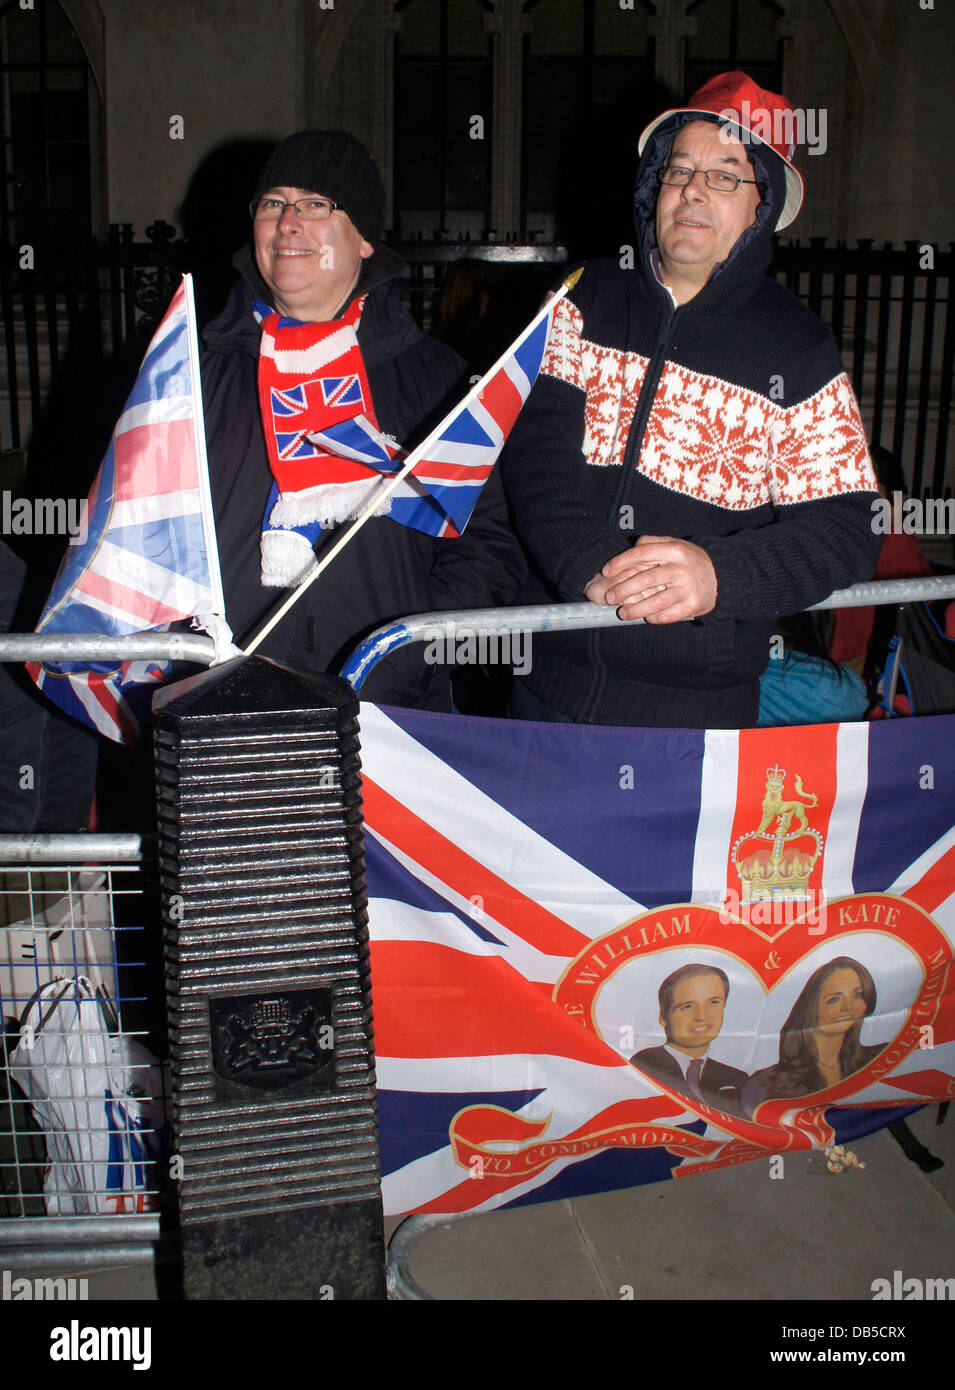 Royal-Fans, die Vorbereitungen für die königliche Hochzeit von Prinz William und Kate Middleton außerhalb von Westminster Abbey London, England - 28.04.11 Stockfoto